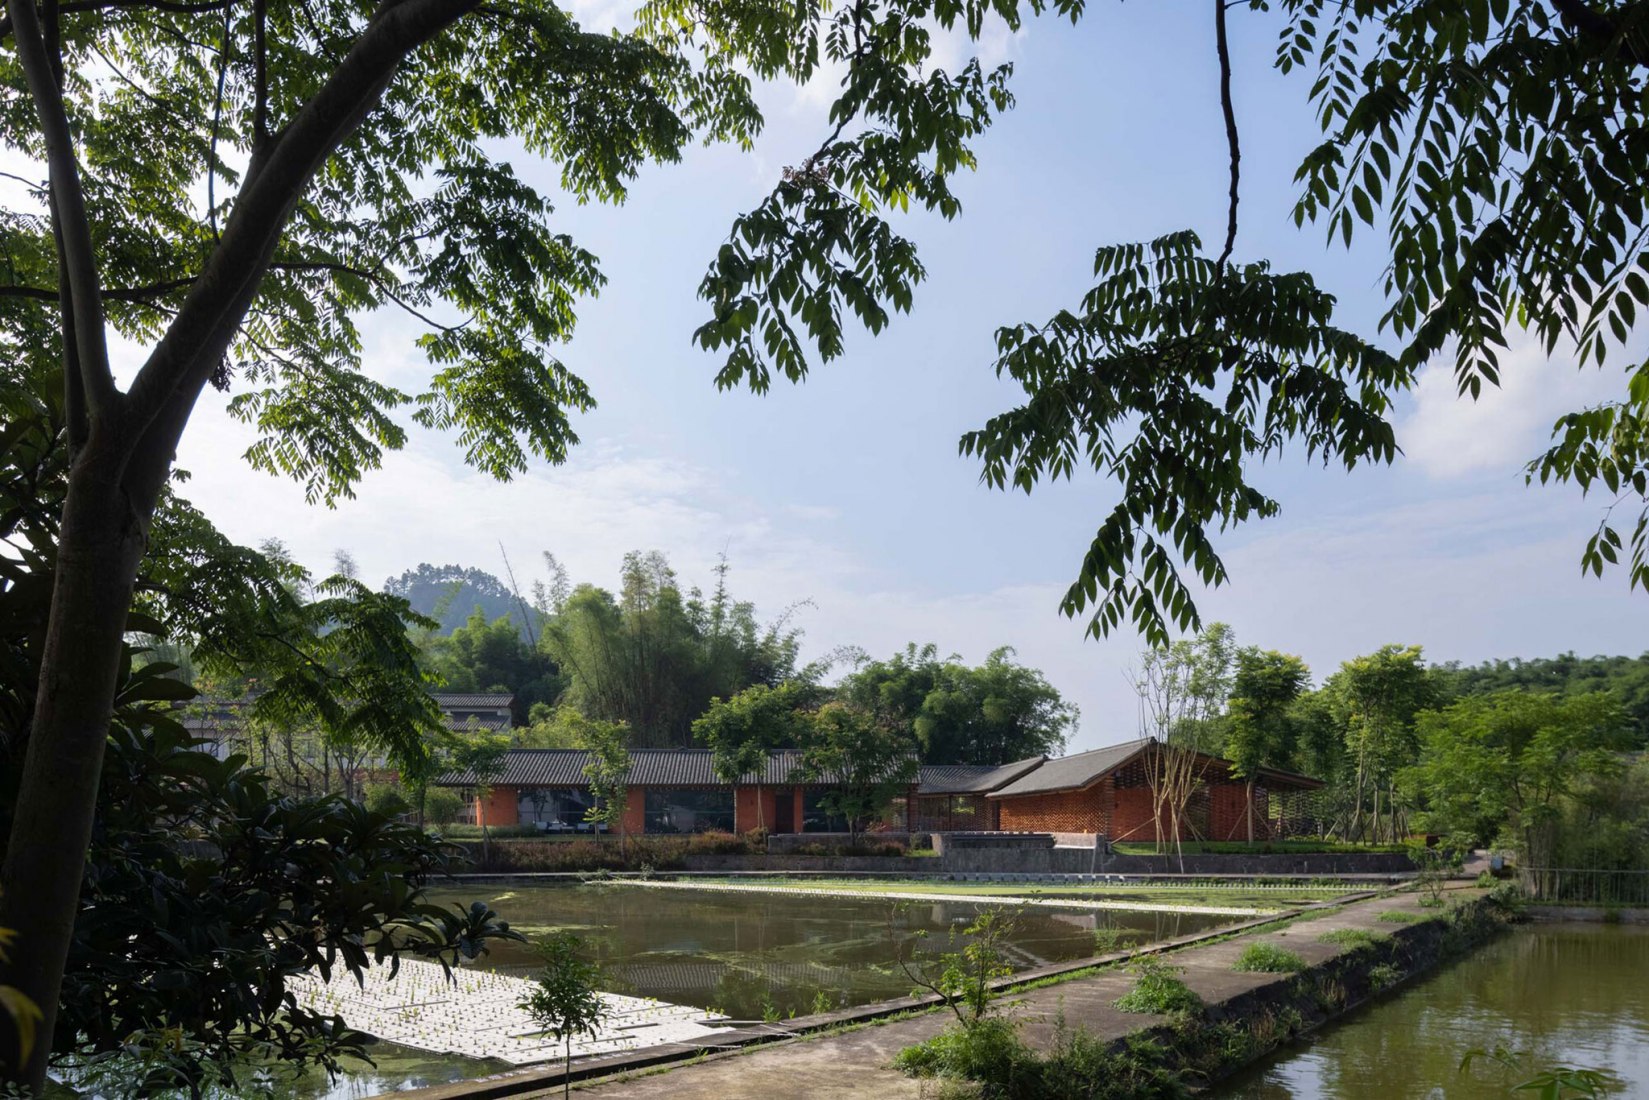 Complejo de jardín de leña Shanshui por Mix Architecture. Fotografía por Arch-Exist.